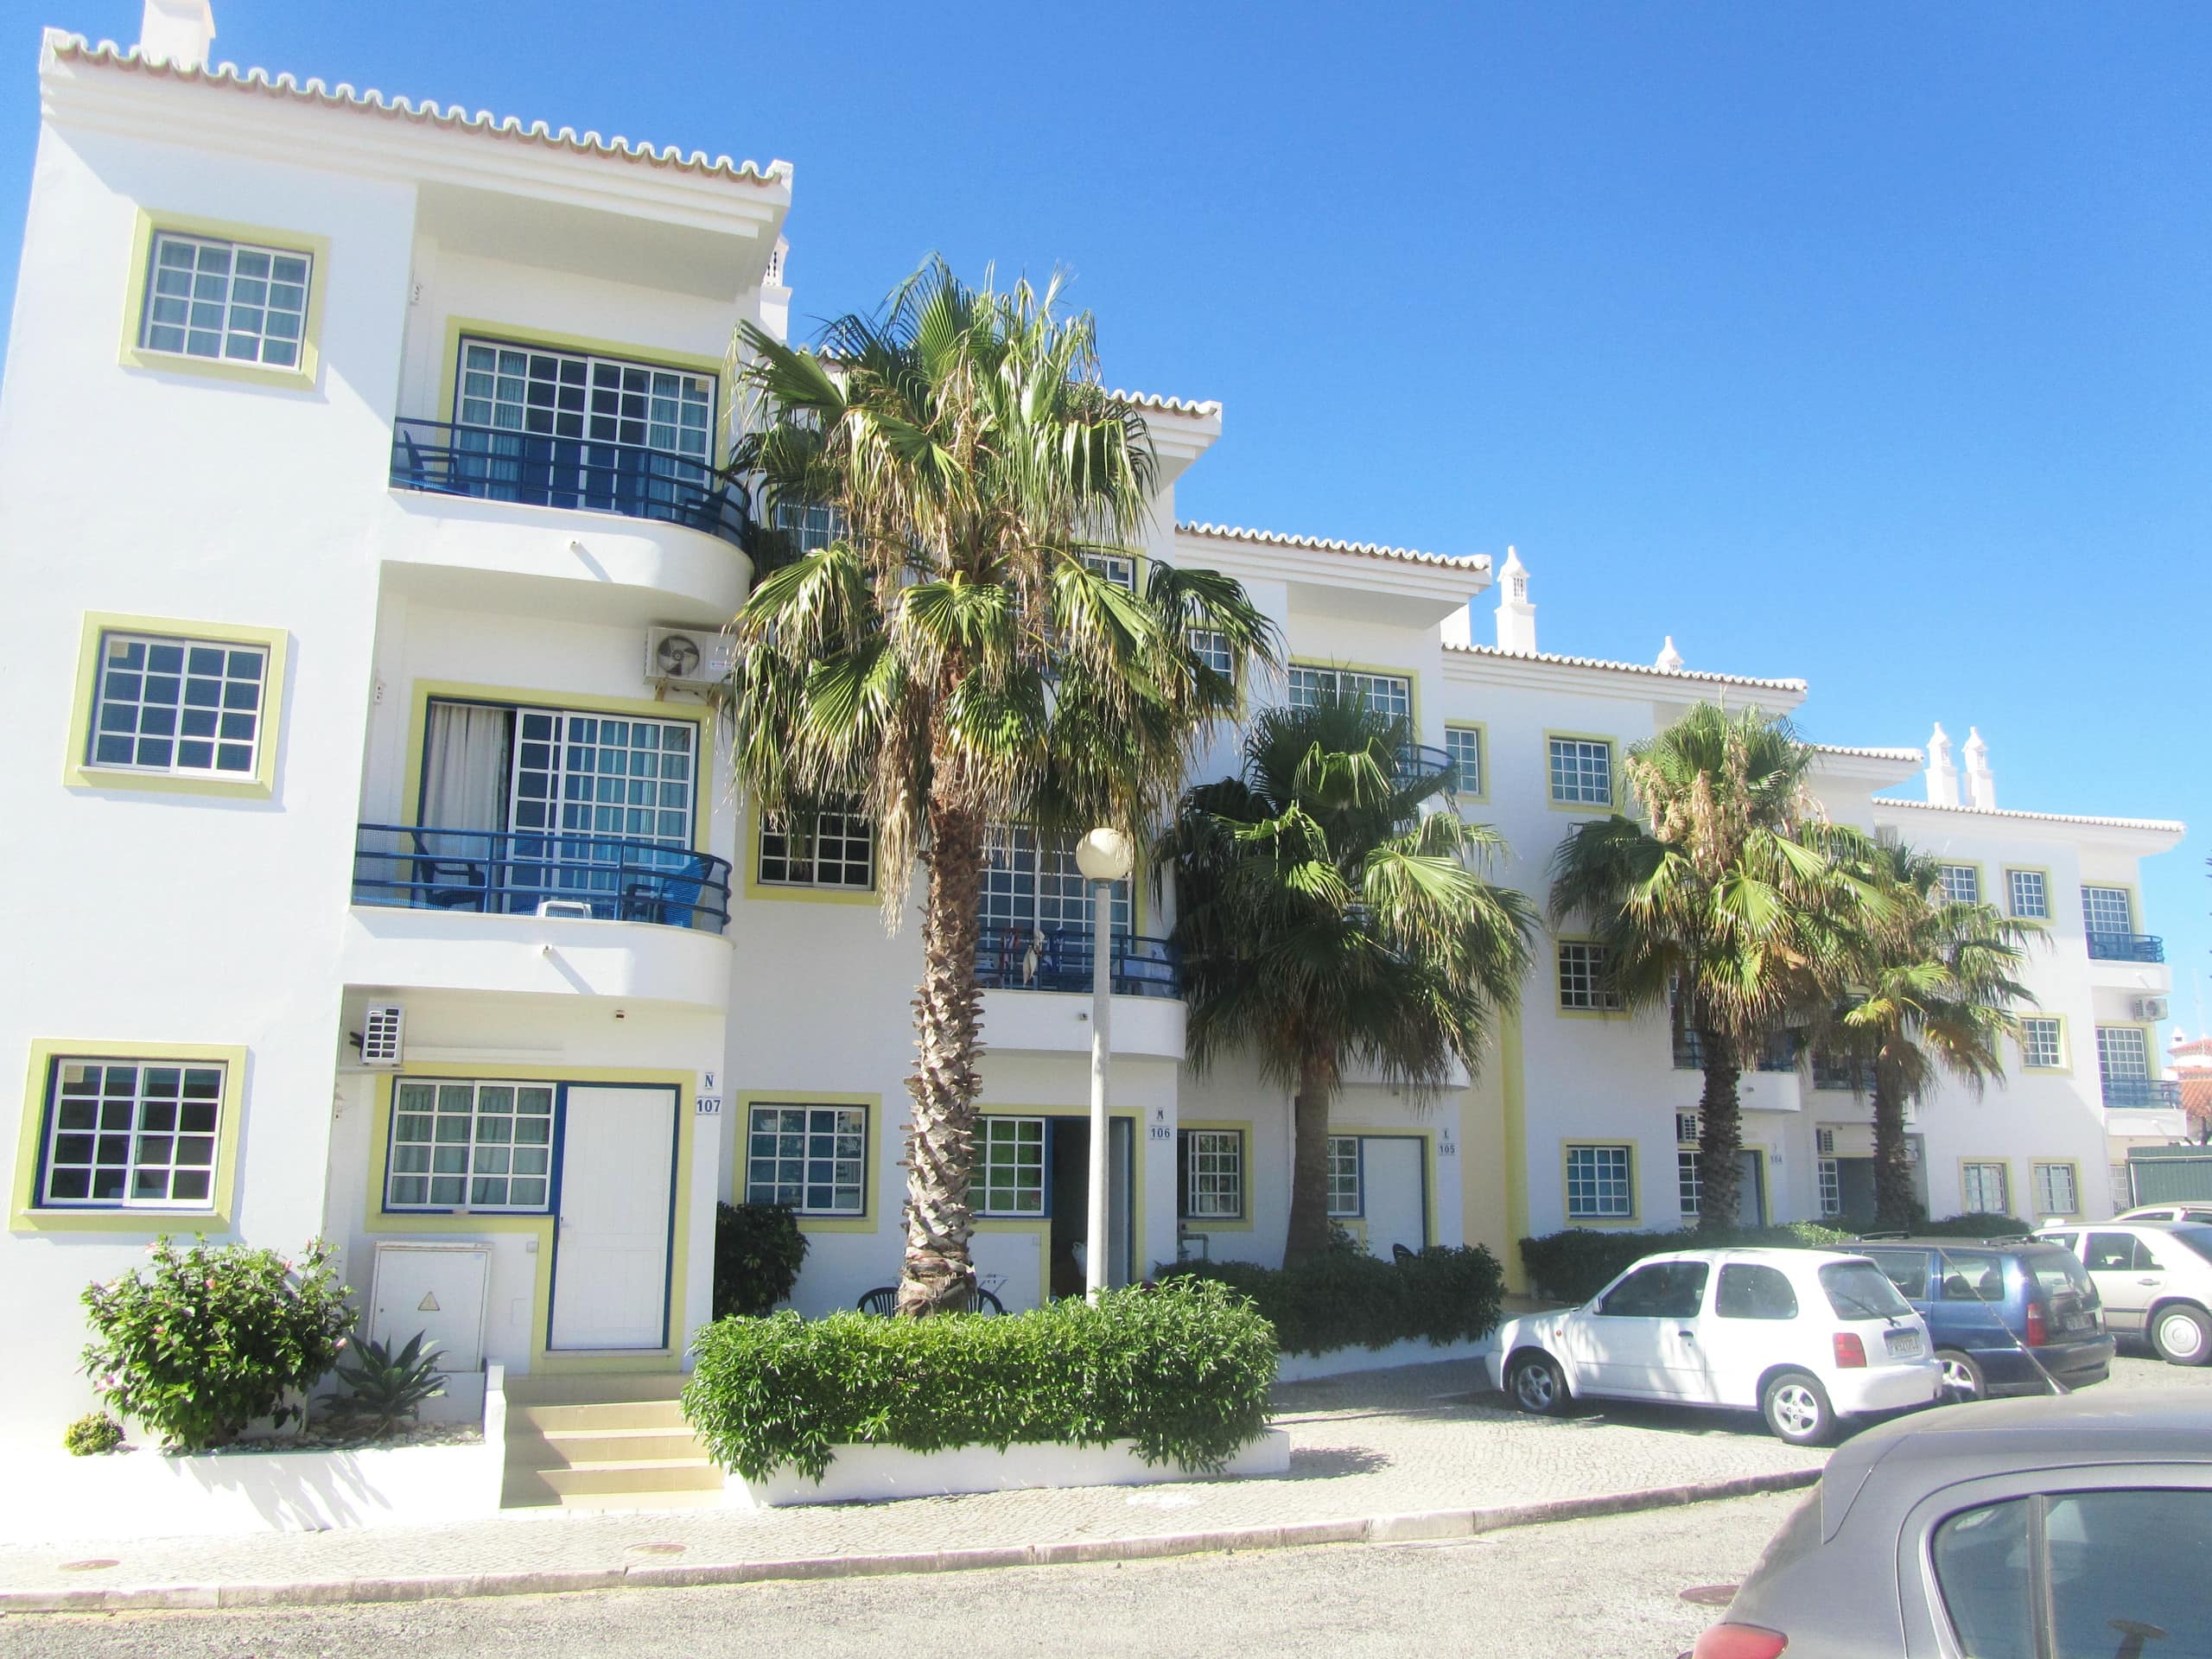 Appartementen in zonnig Portugal